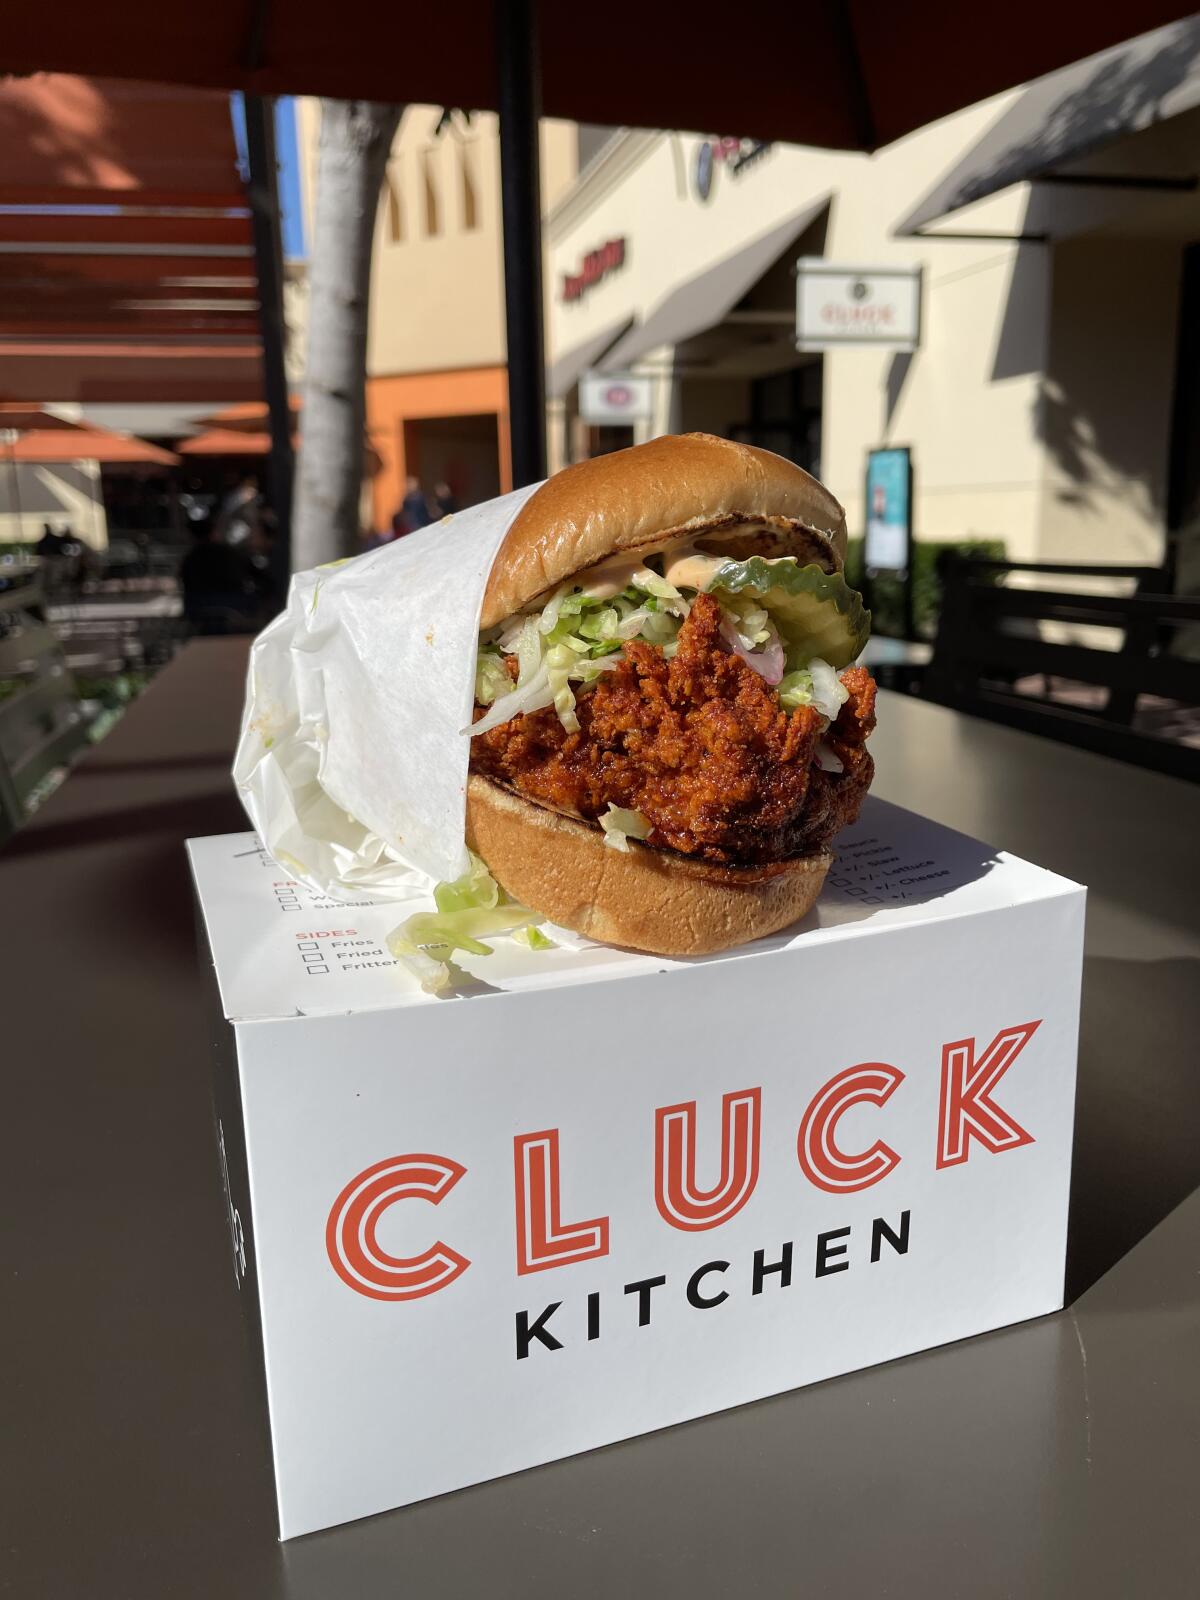 Cluck Kitchen’s Nashville Hot Chicken sandwich